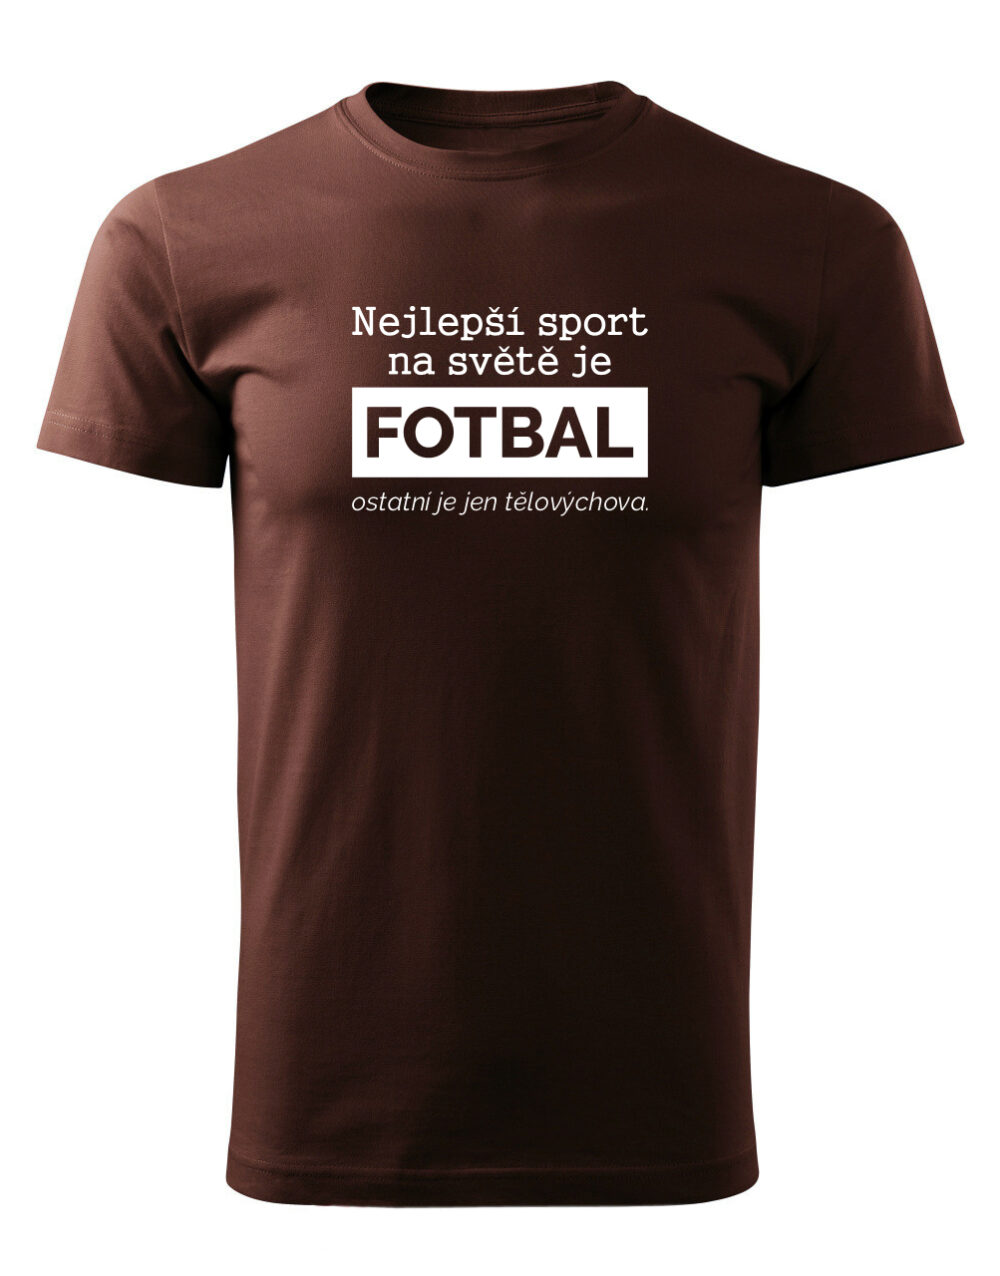 Pánské tričko s potiskem Nejlepší sport je fotbal čokoládová